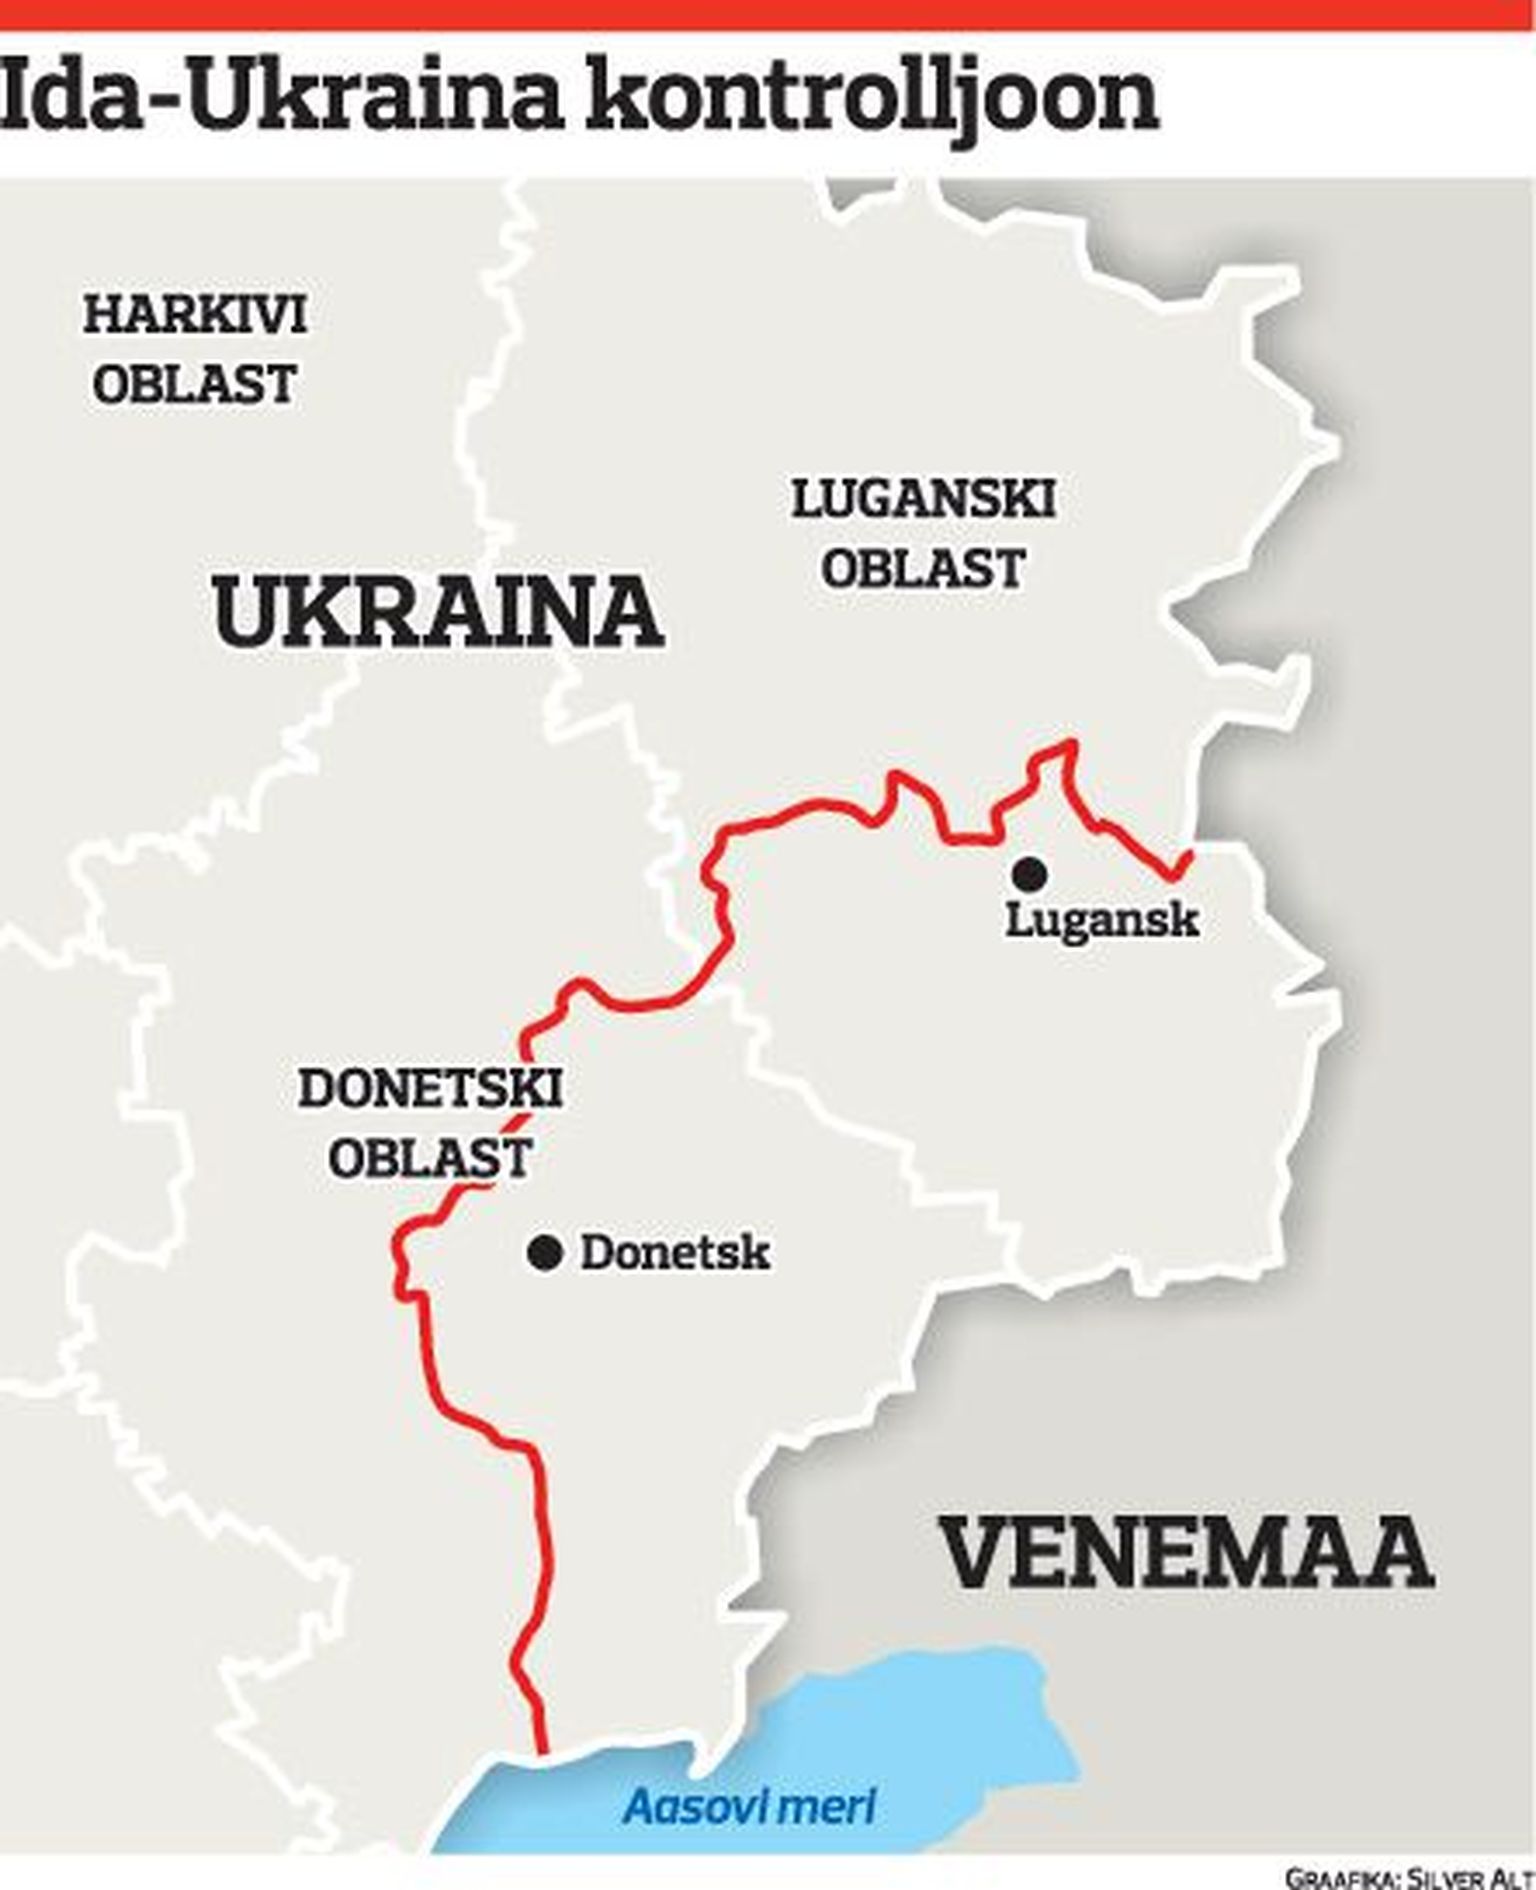 Ida-Ukraina kontrolljoon